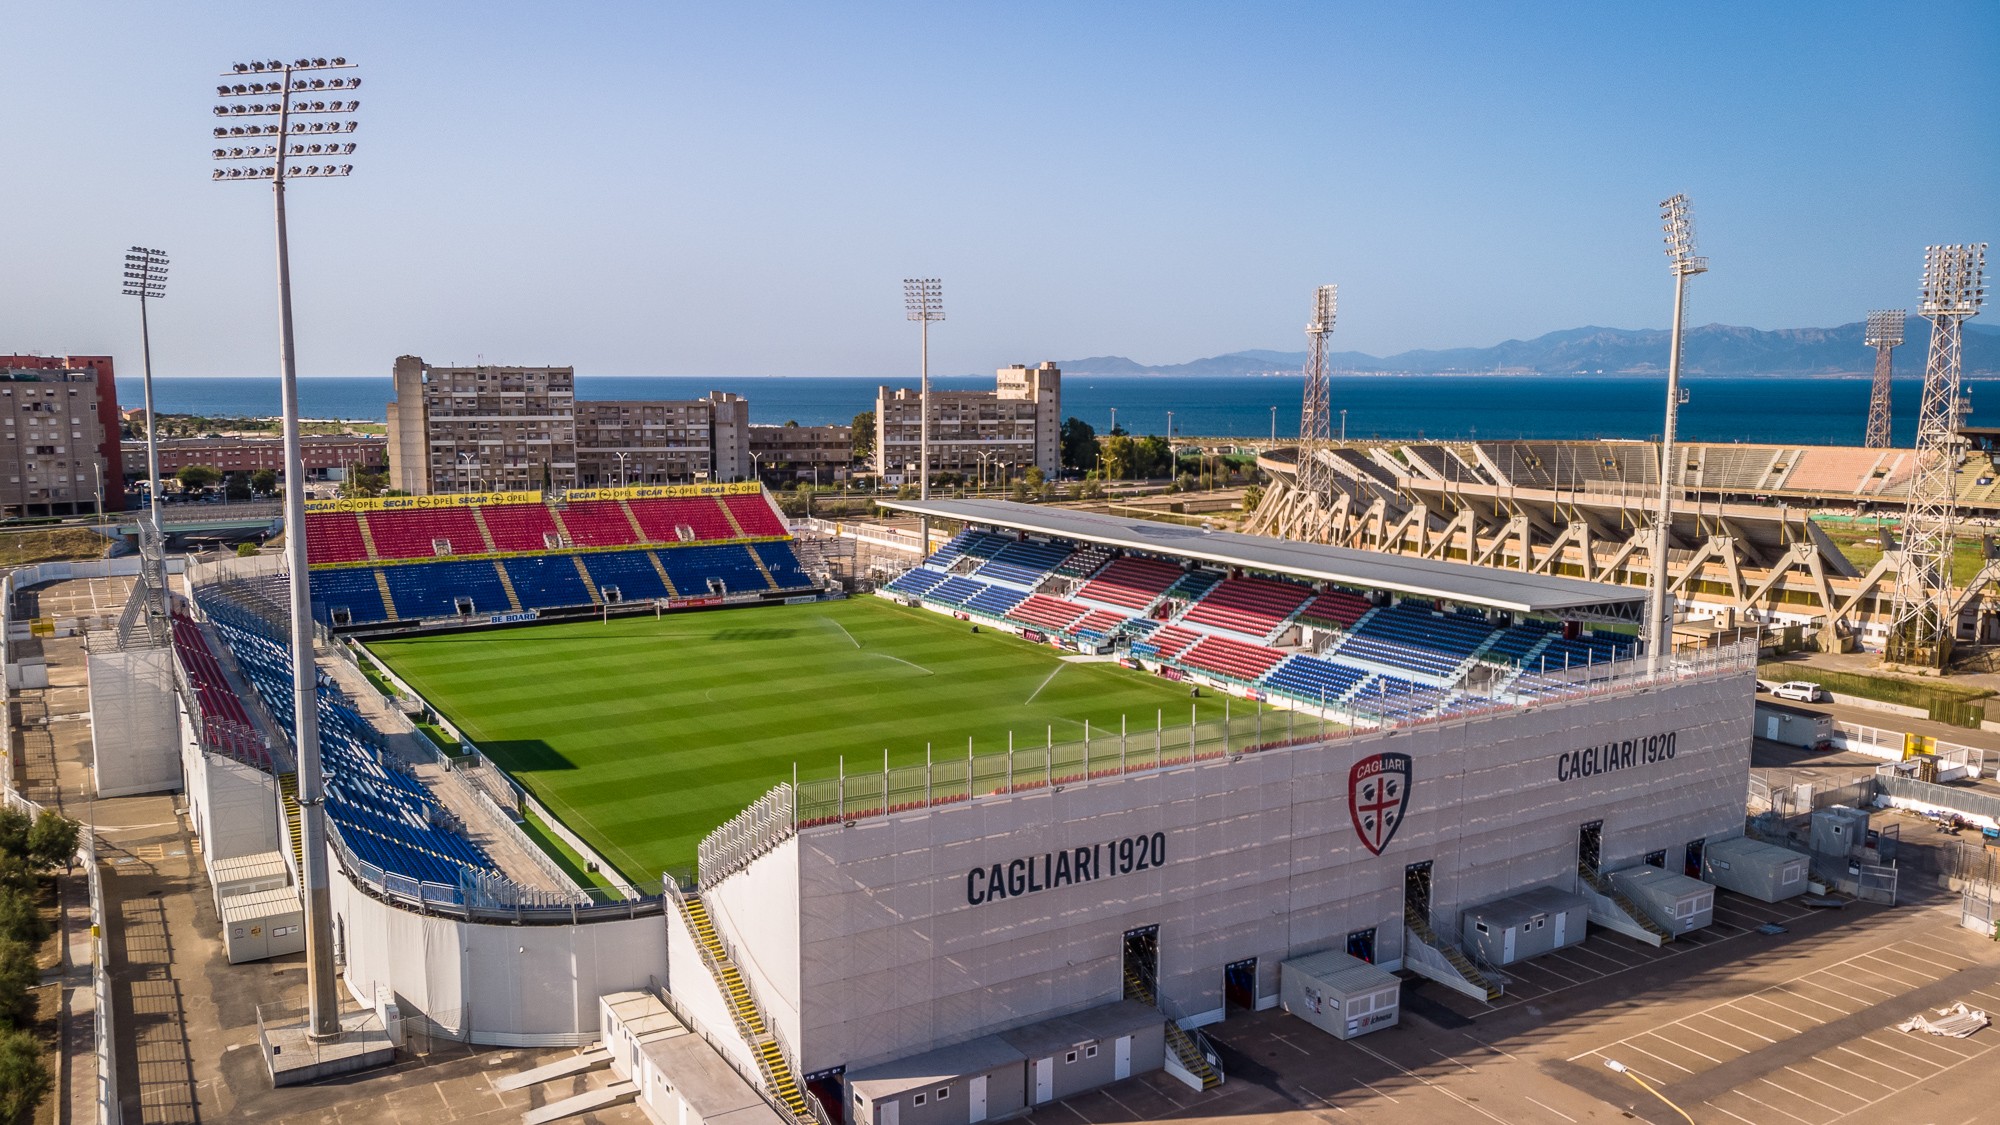 Cagliari Stadion